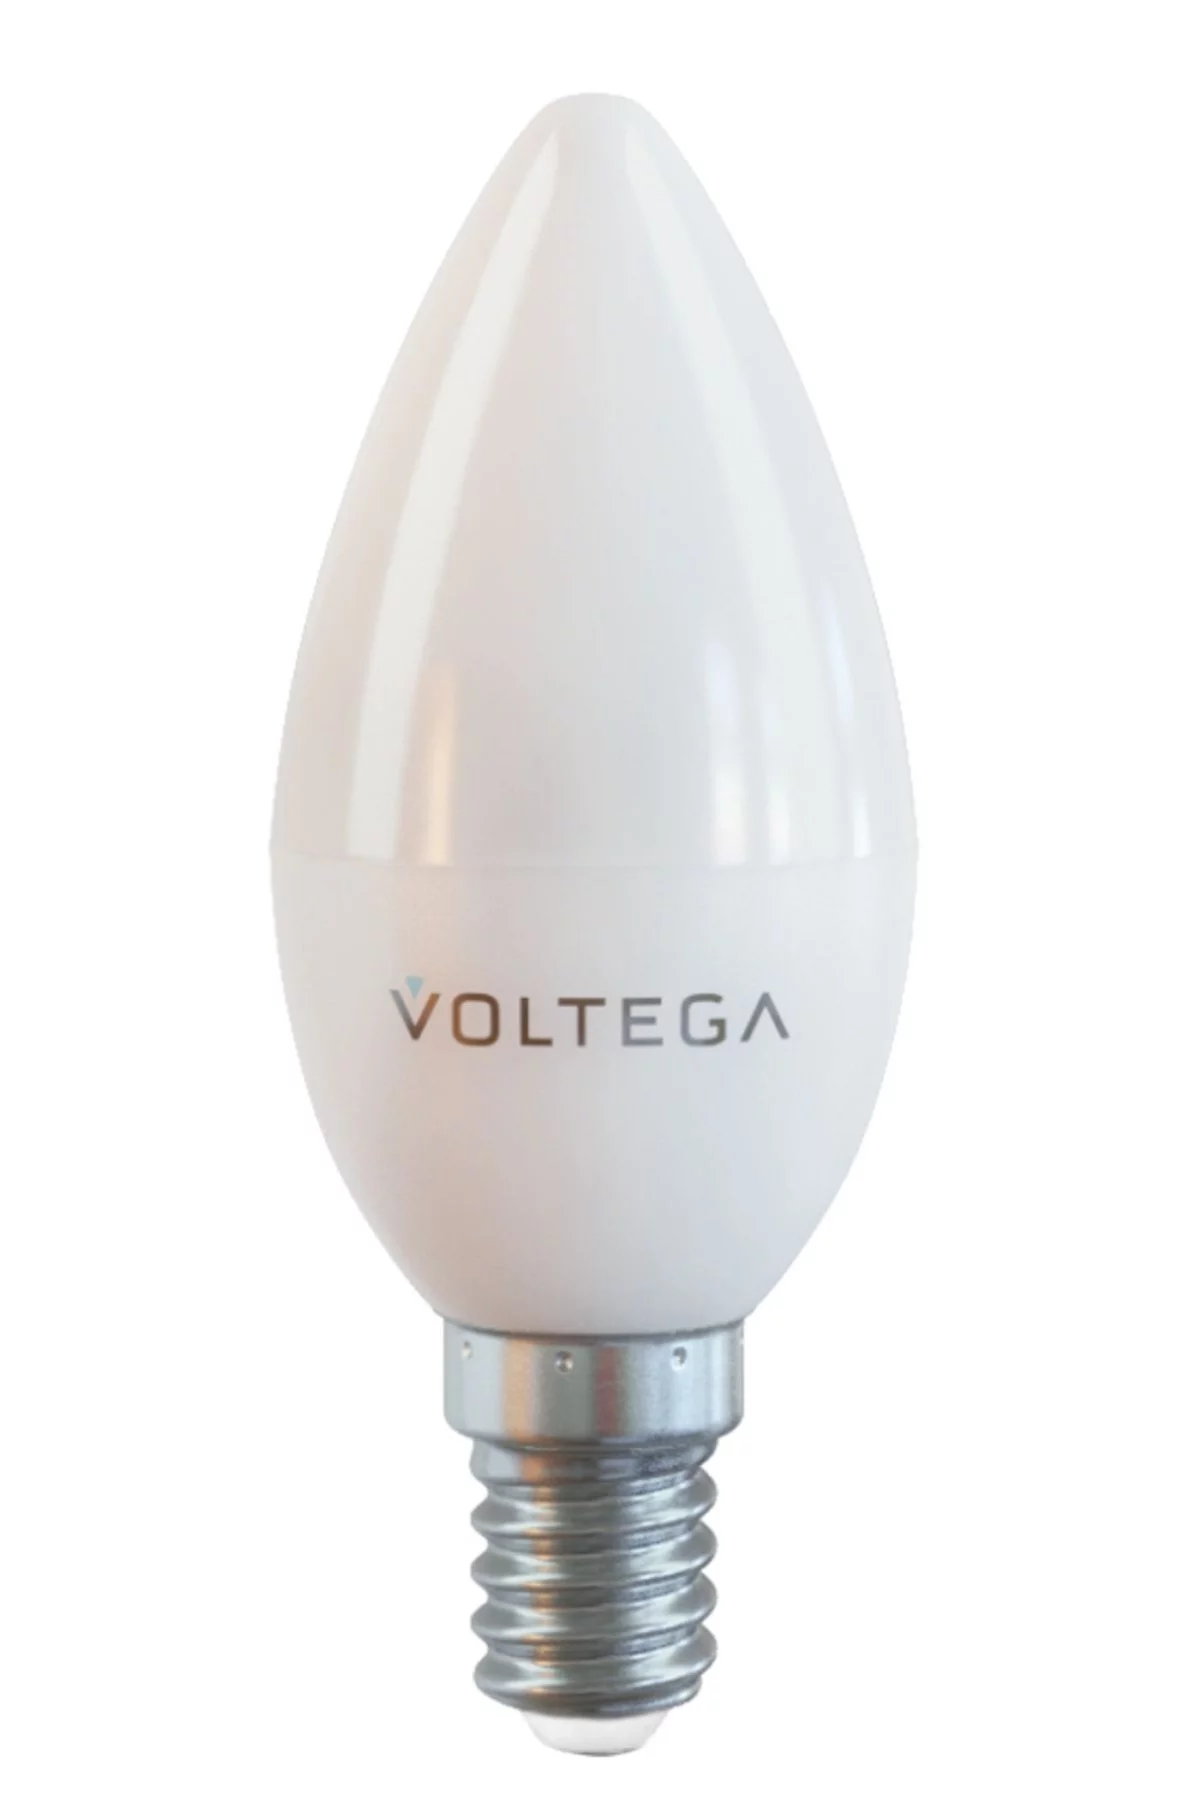   
                        
                        Лампа VOLTEGA  17031    
                        .  
                                                                                                Материал: Пластик.                          фото 1